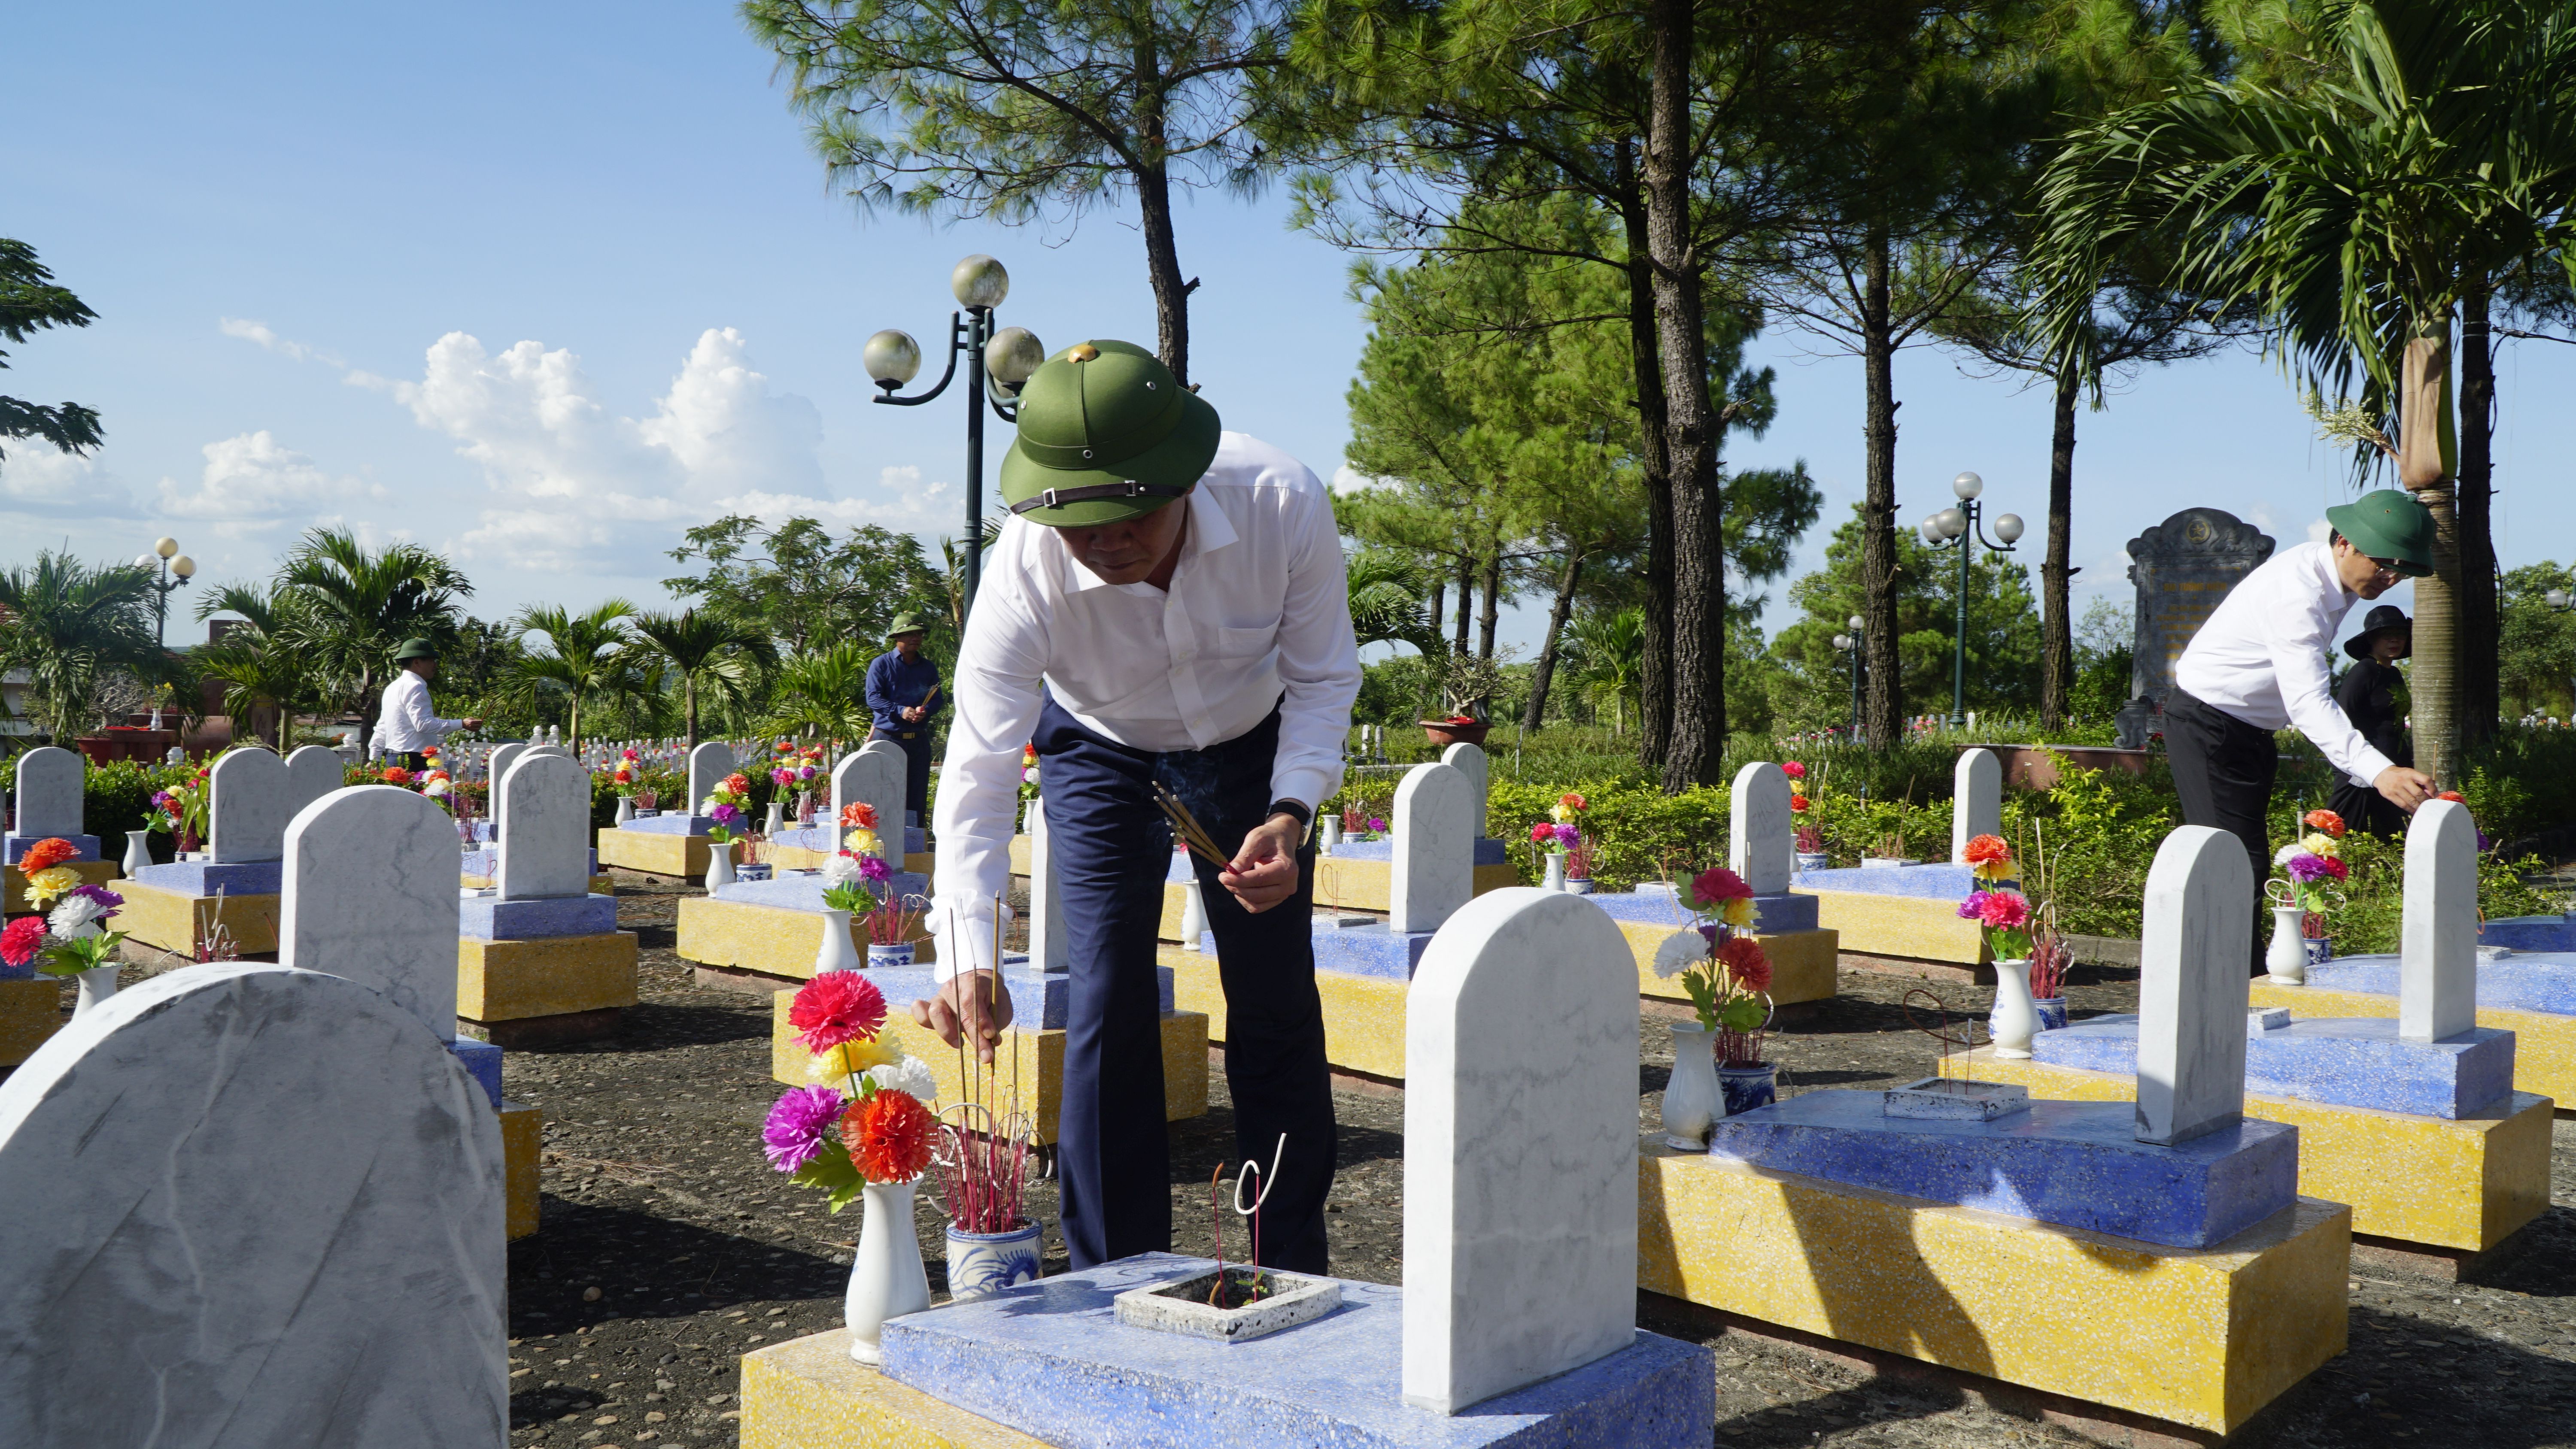 Đồng chí Trần Thắng, Phó Bí thư Tỉnh ủy, Chủ tịch UBND tỉnh thắp hương trên các phần mộ liệt sỹ.